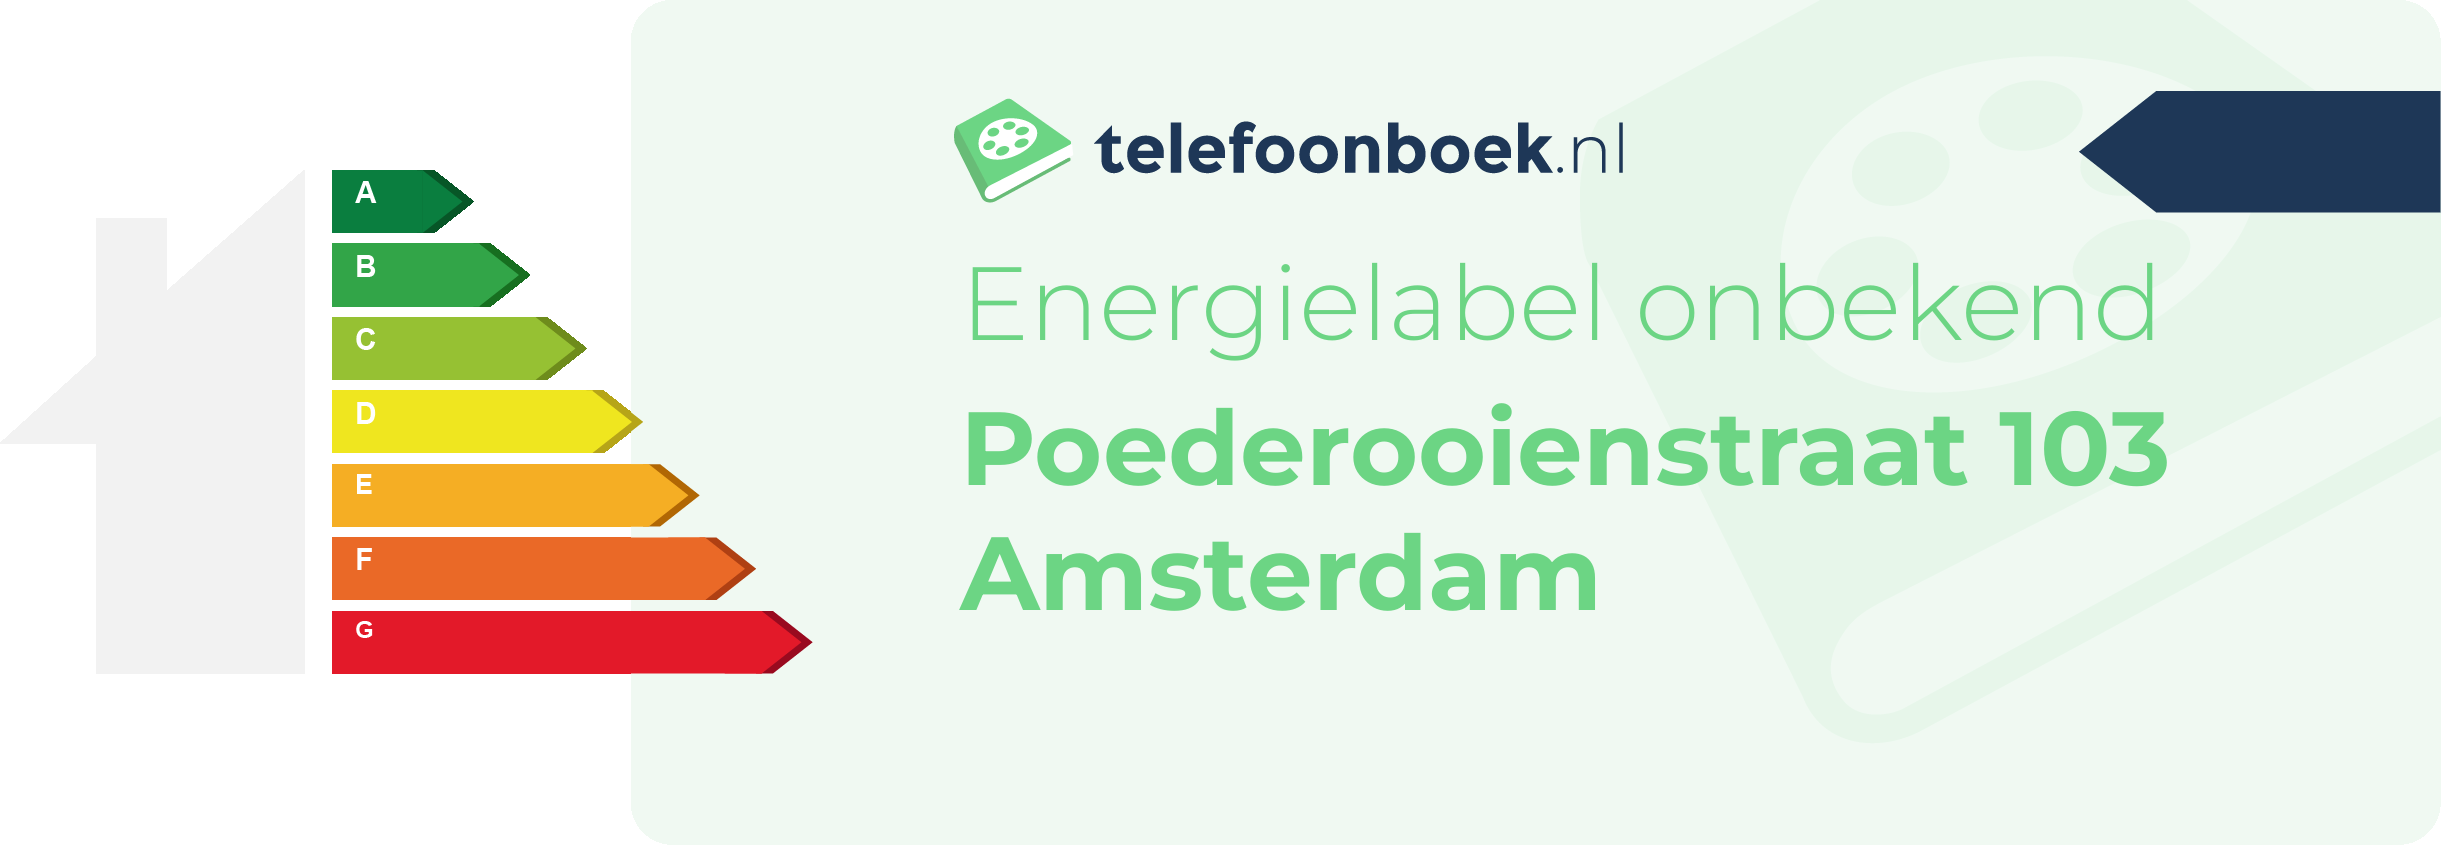 Energielabel Poederooienstraat 103 Amsterdam